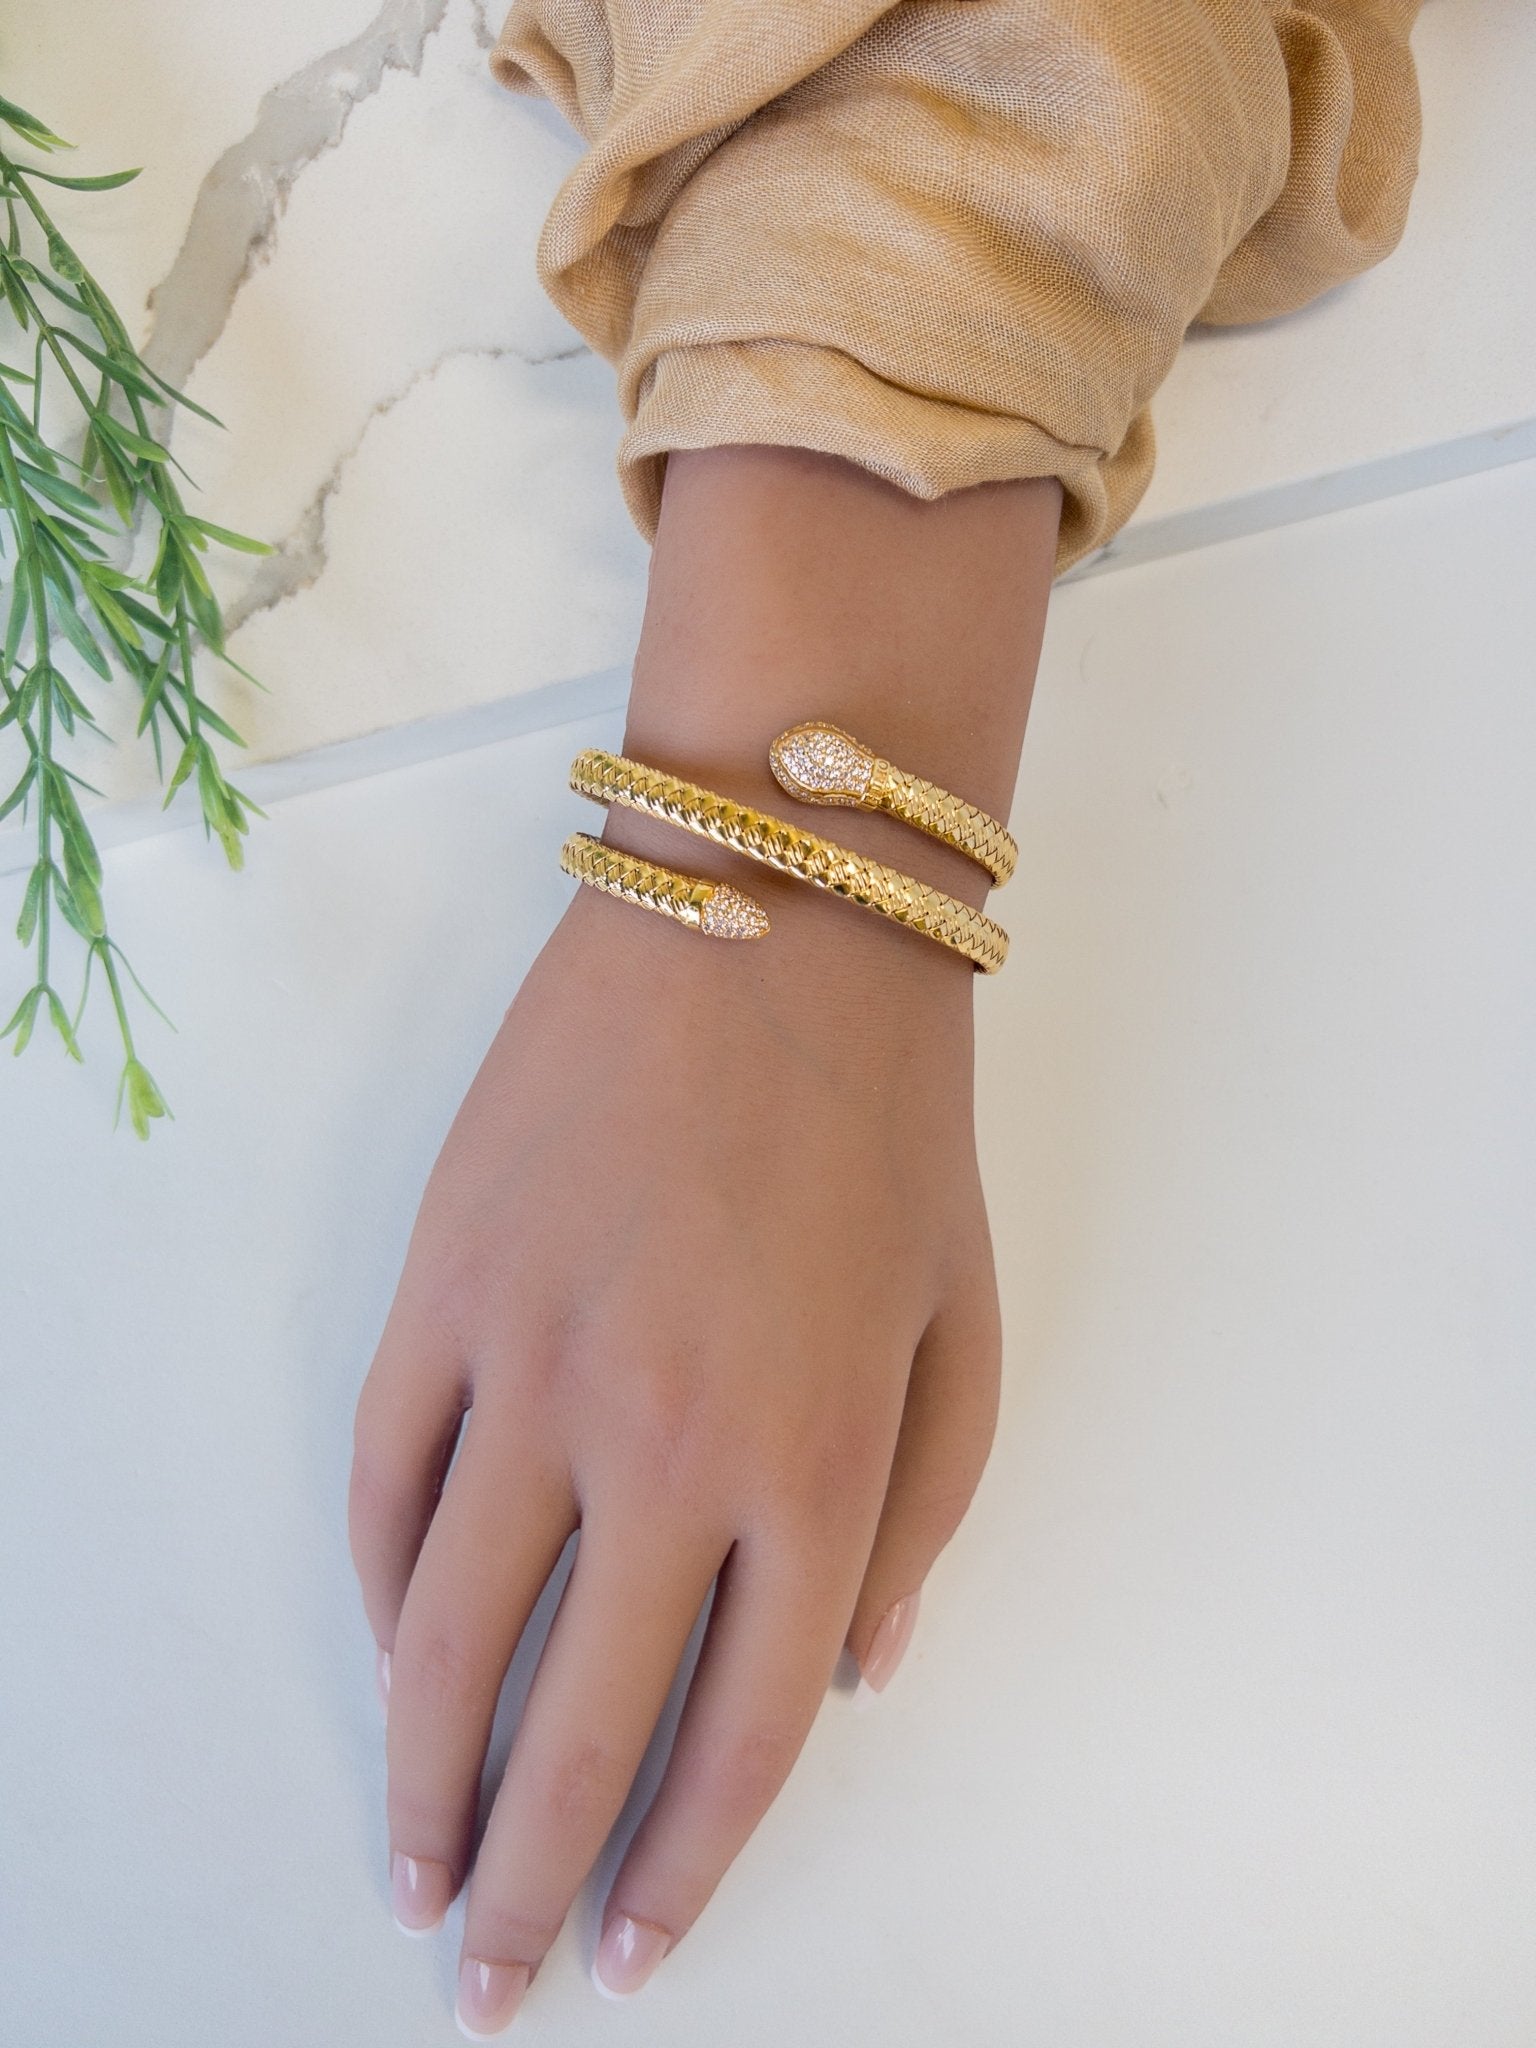 Gift For Girls in Dubai AbuDhabi UAE | Customised Arabic Name Bracelet –  Necklaces by Samaa